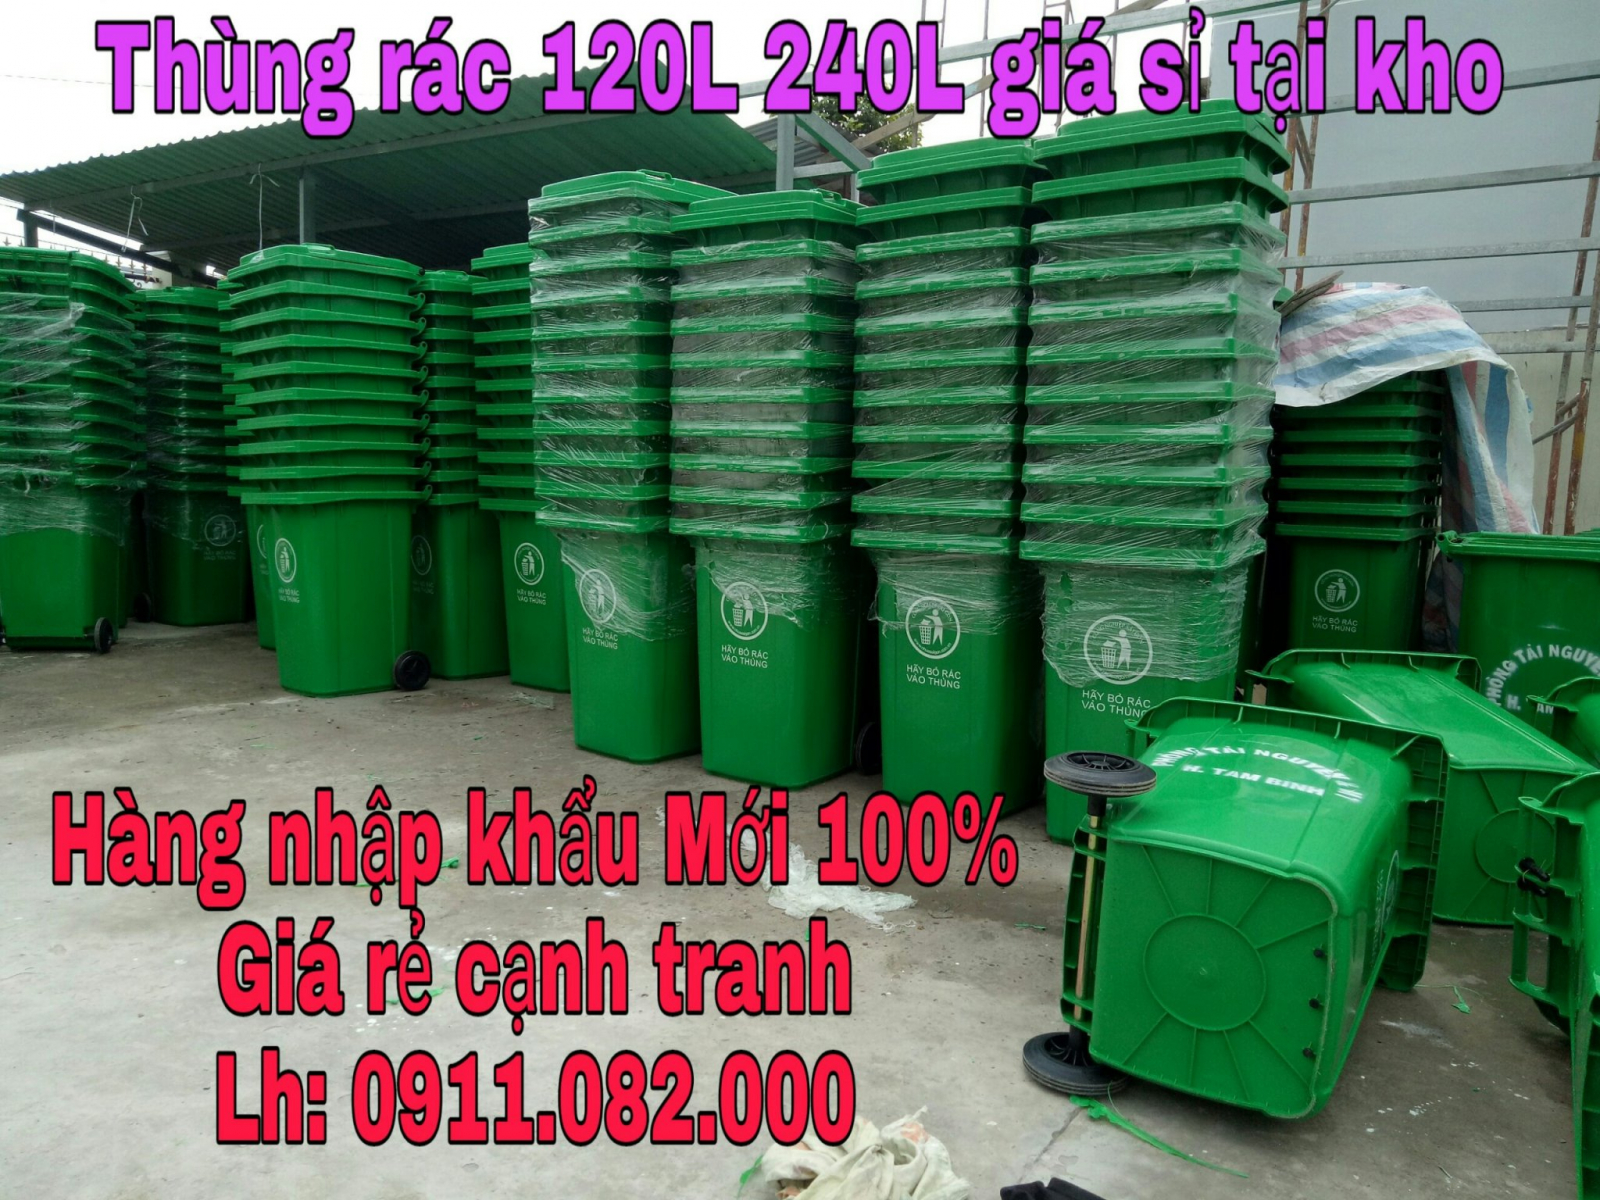 Cung cấp thùng rác chất lượng giá rẻ cạnh tranh, thùng rác 120L 240L 660L